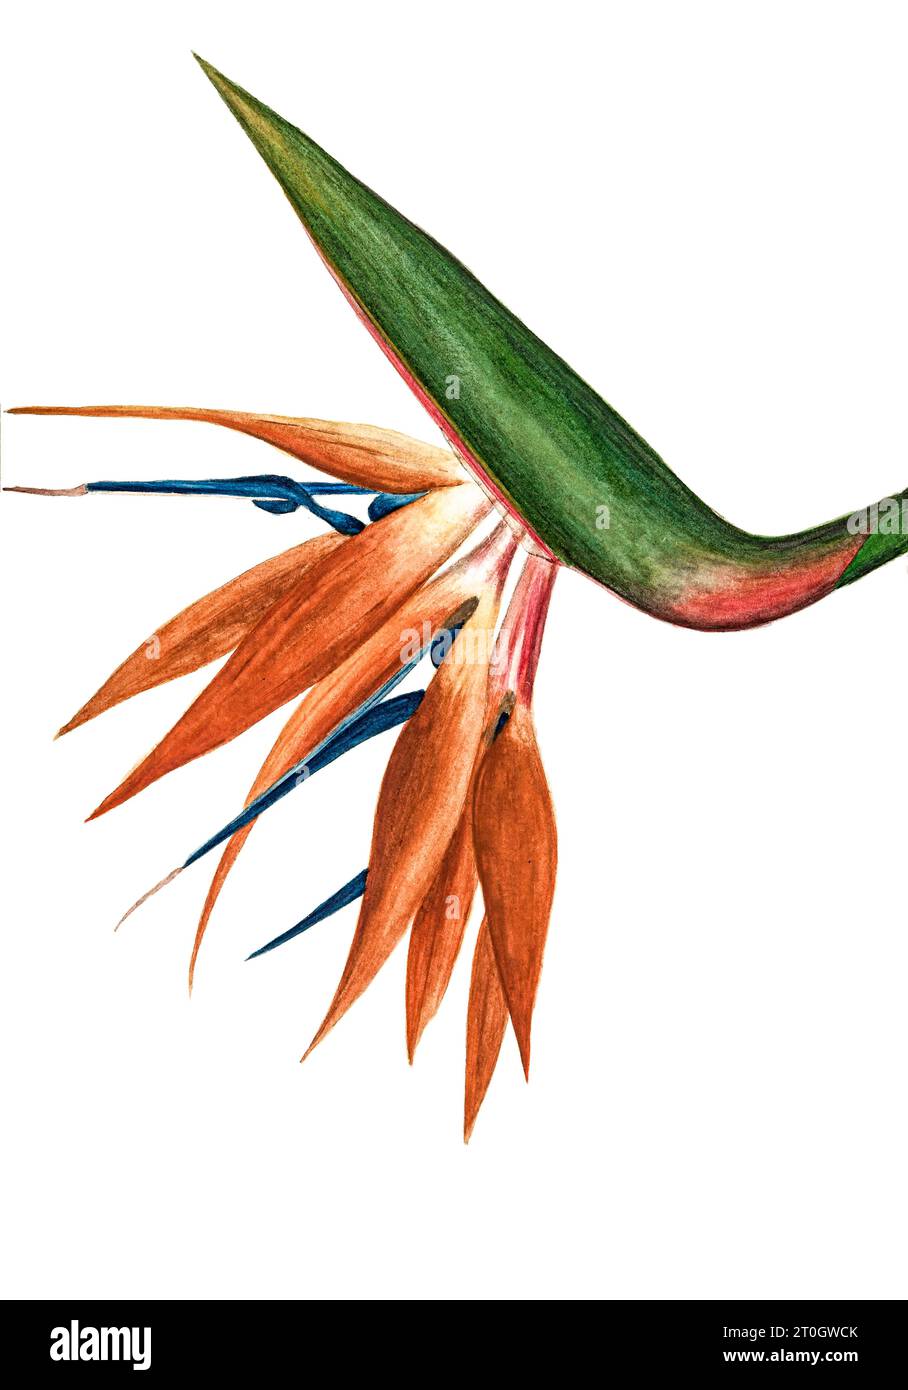 Oiseau de paradis (Strelitzia sp.), illustration du 19e siècle Banque D'Images